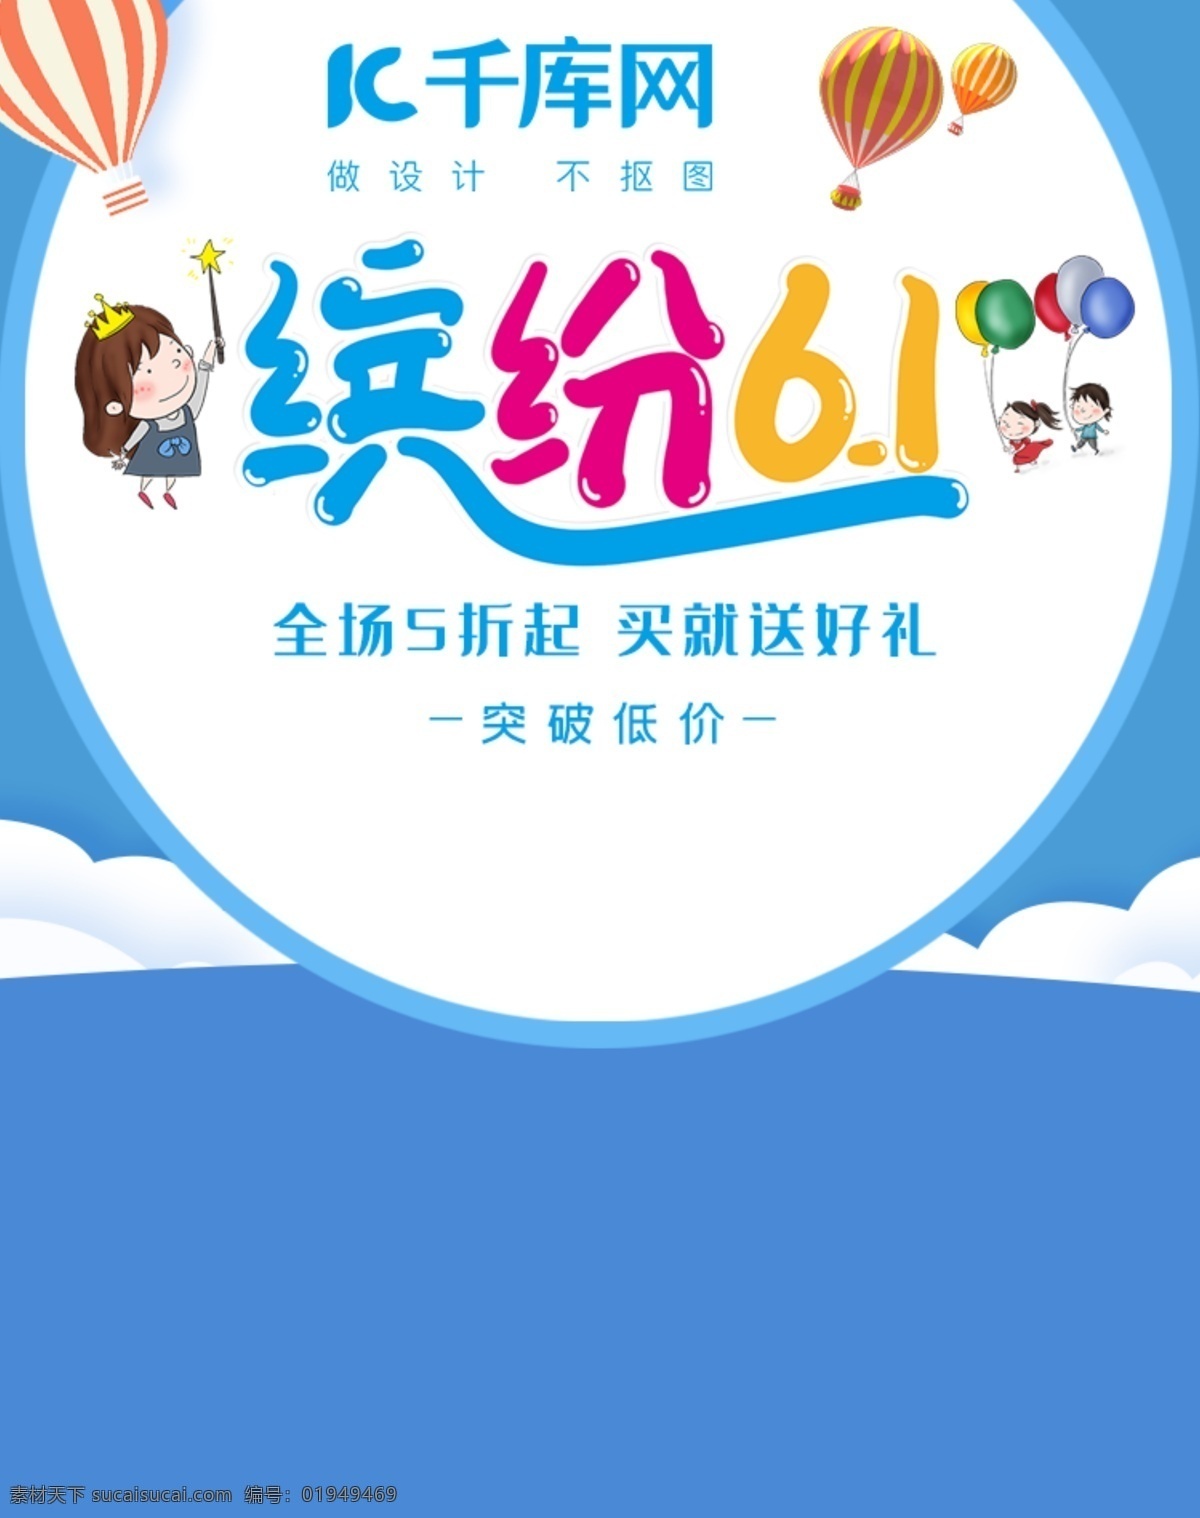 六一儿童节 电商 banner 活动 促销 可爱 简约 纯色 淘宝 天猫 海报